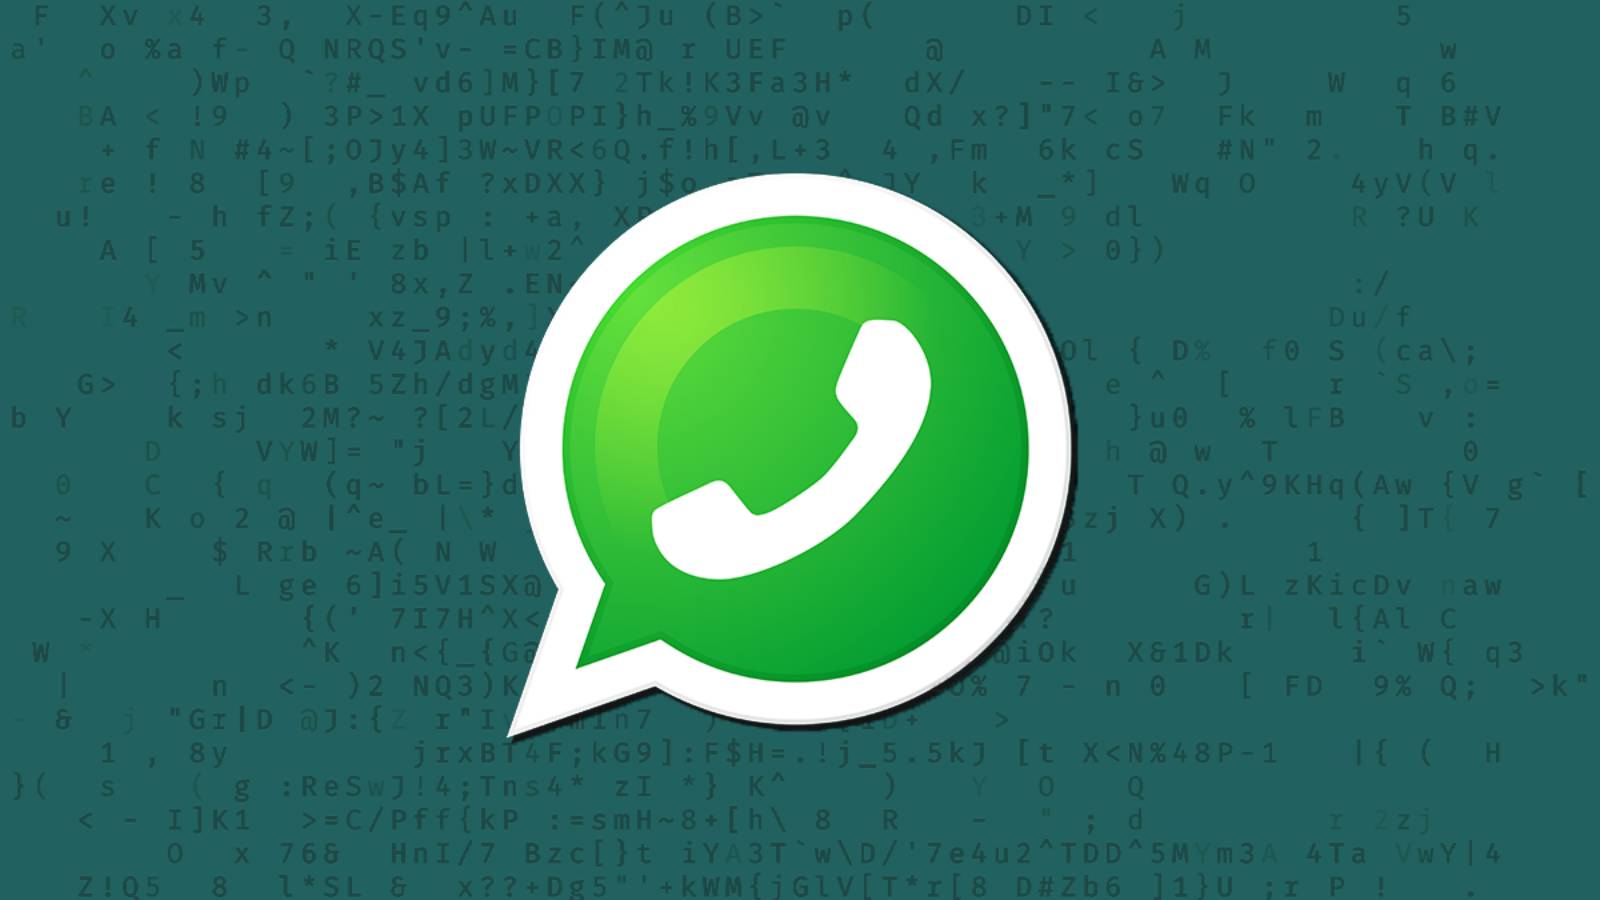 OFICJALNE powiadomienie WhatsApp MILIONÓW ludzi